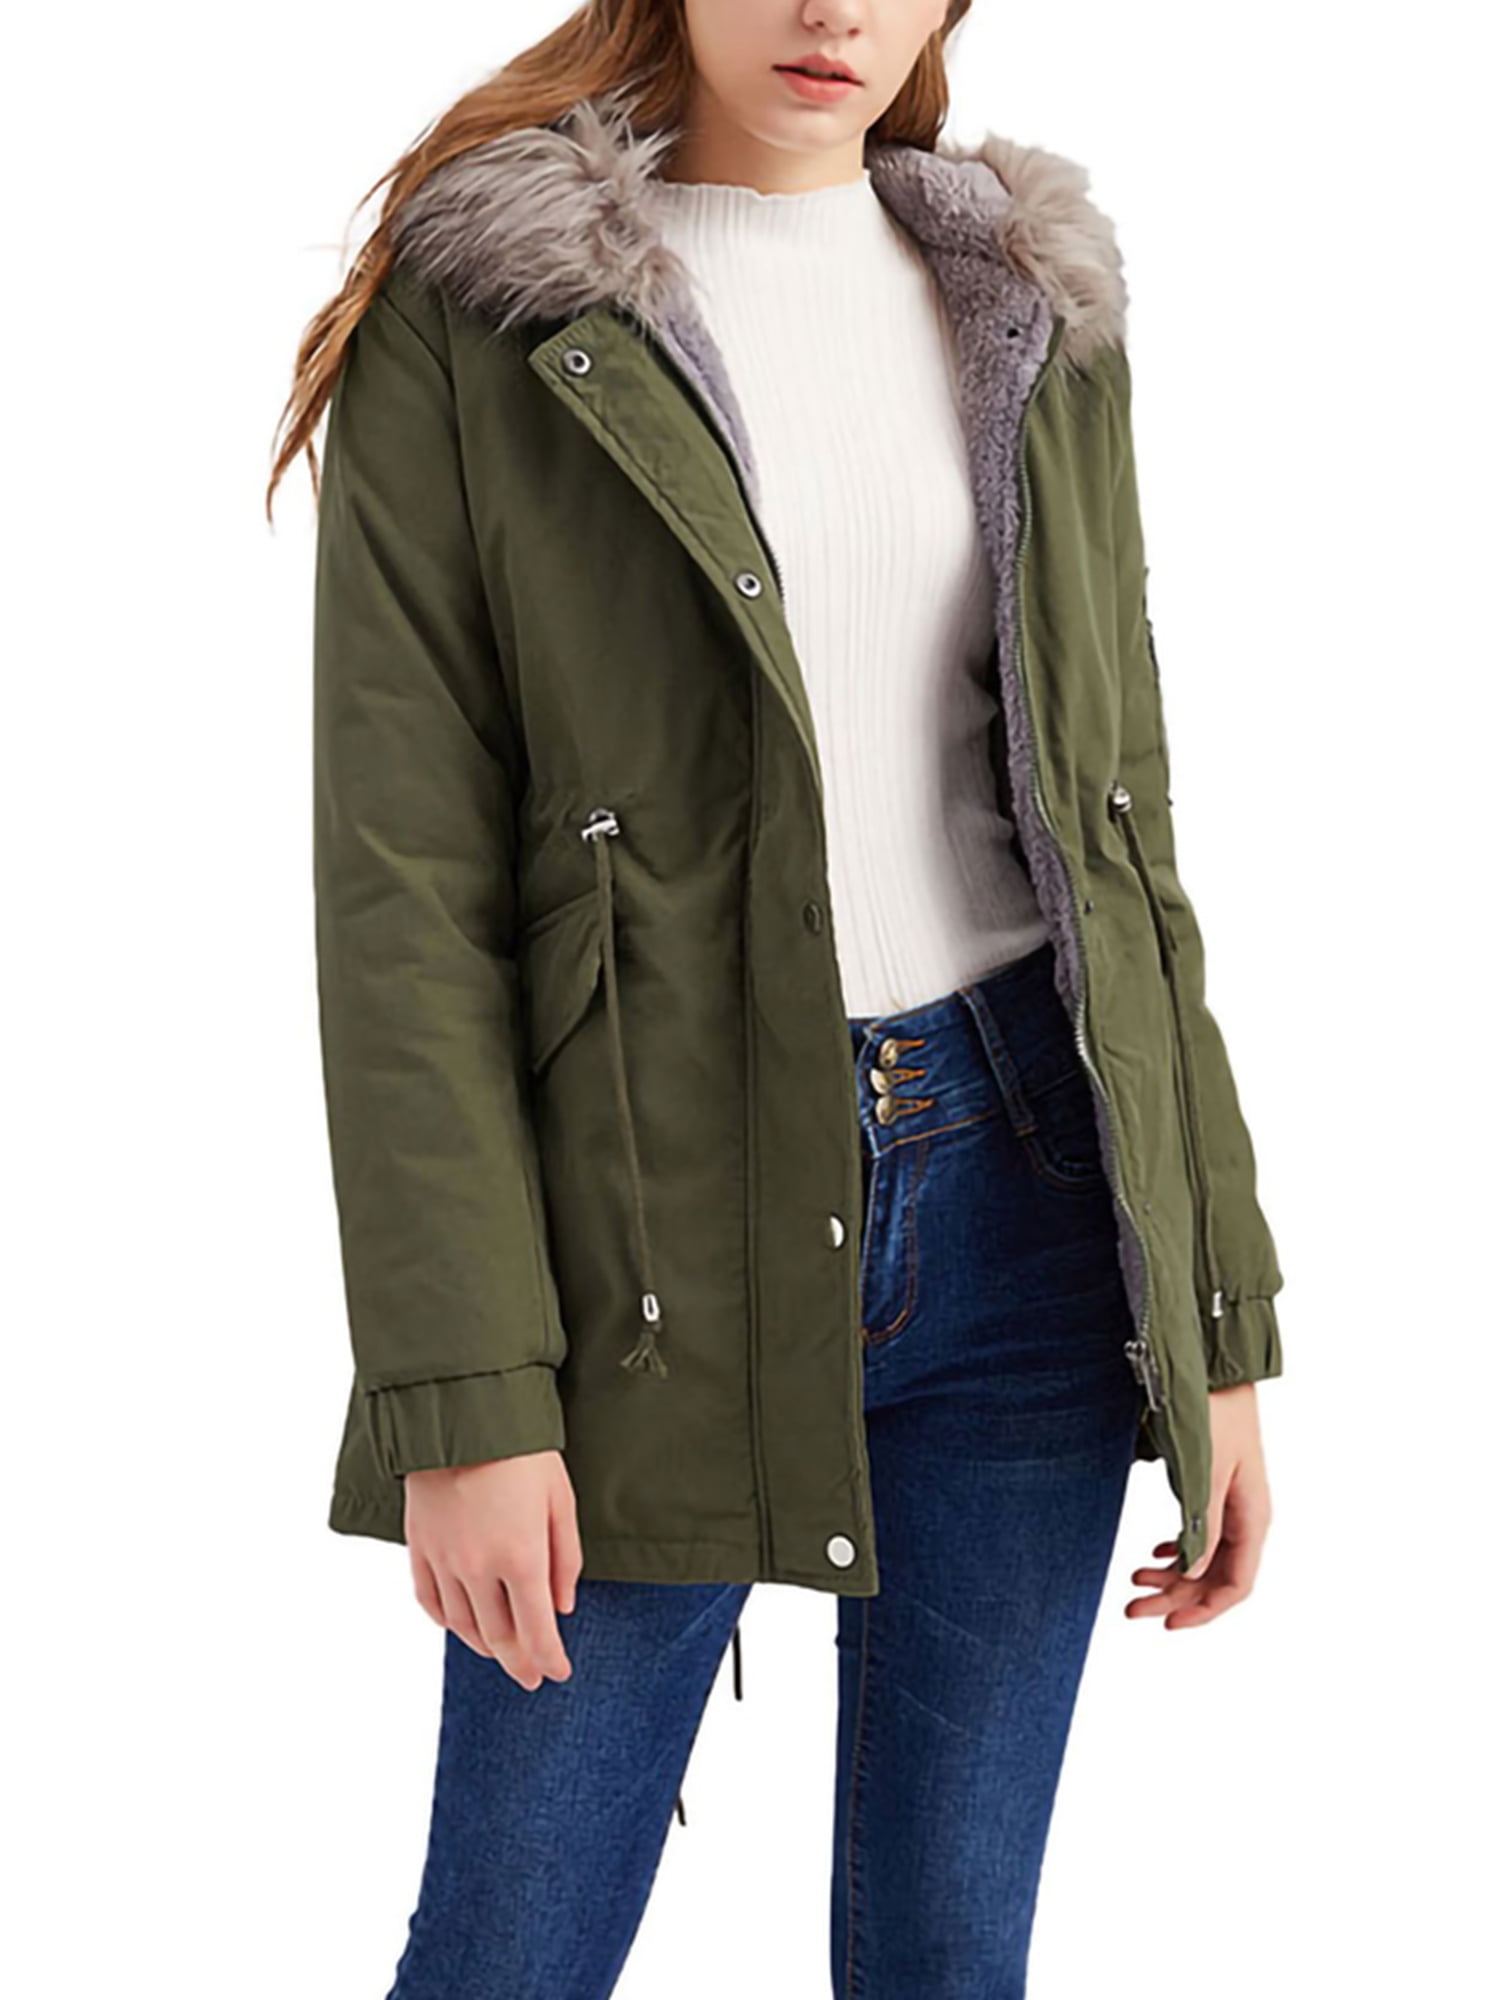 Women's Winter Warm Fur Collar Long Sleeve Hooded Coat Jacket Parka Outwear NEW